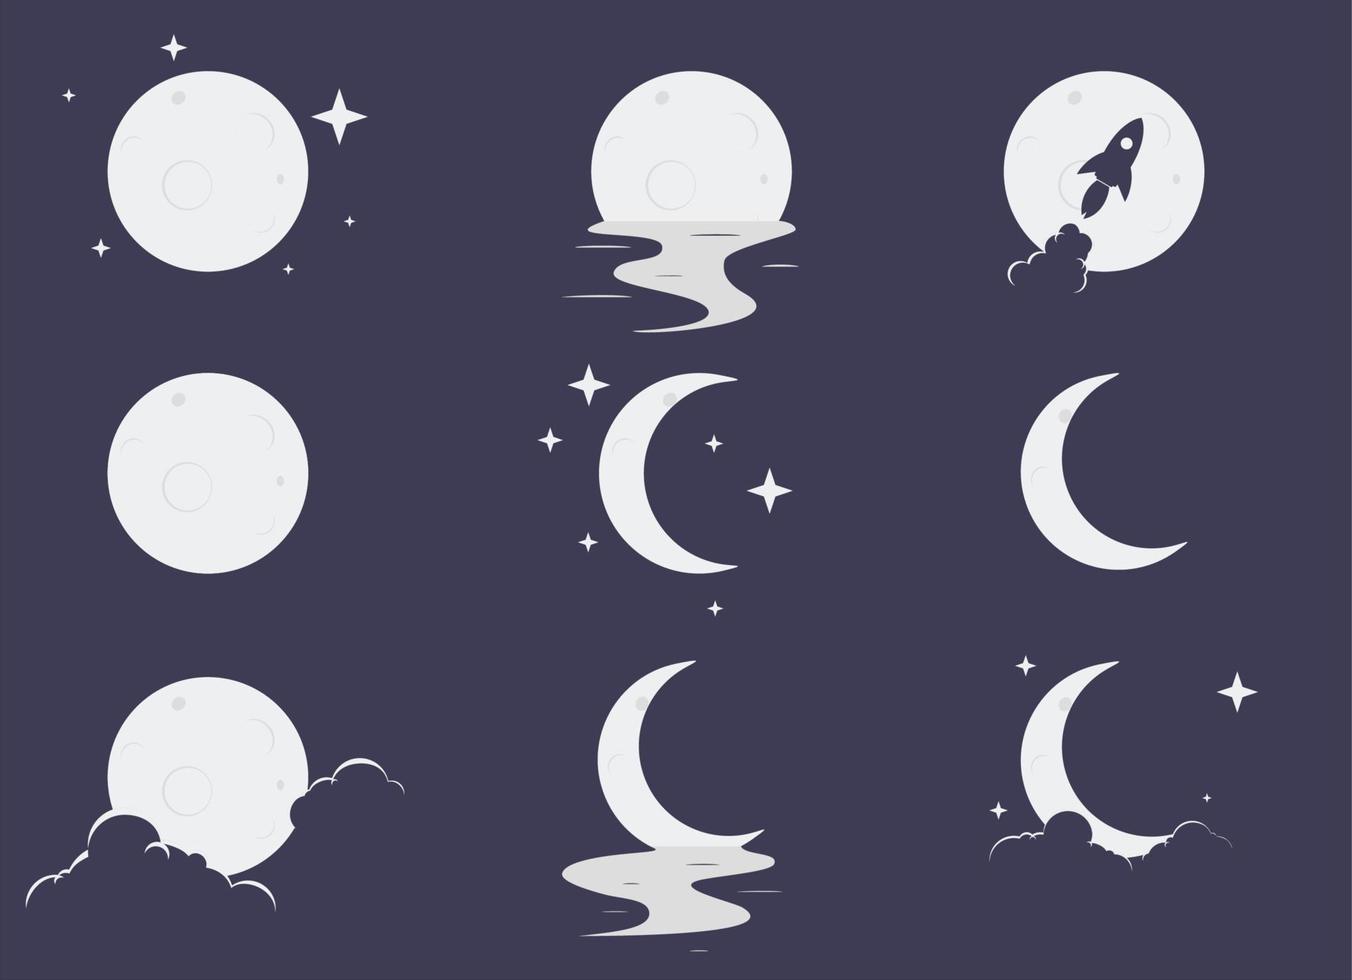 definir lua elegante com estrela, reflexo na água, nuvens e ilustração vetorial de ícone de foguete eps10 vetor